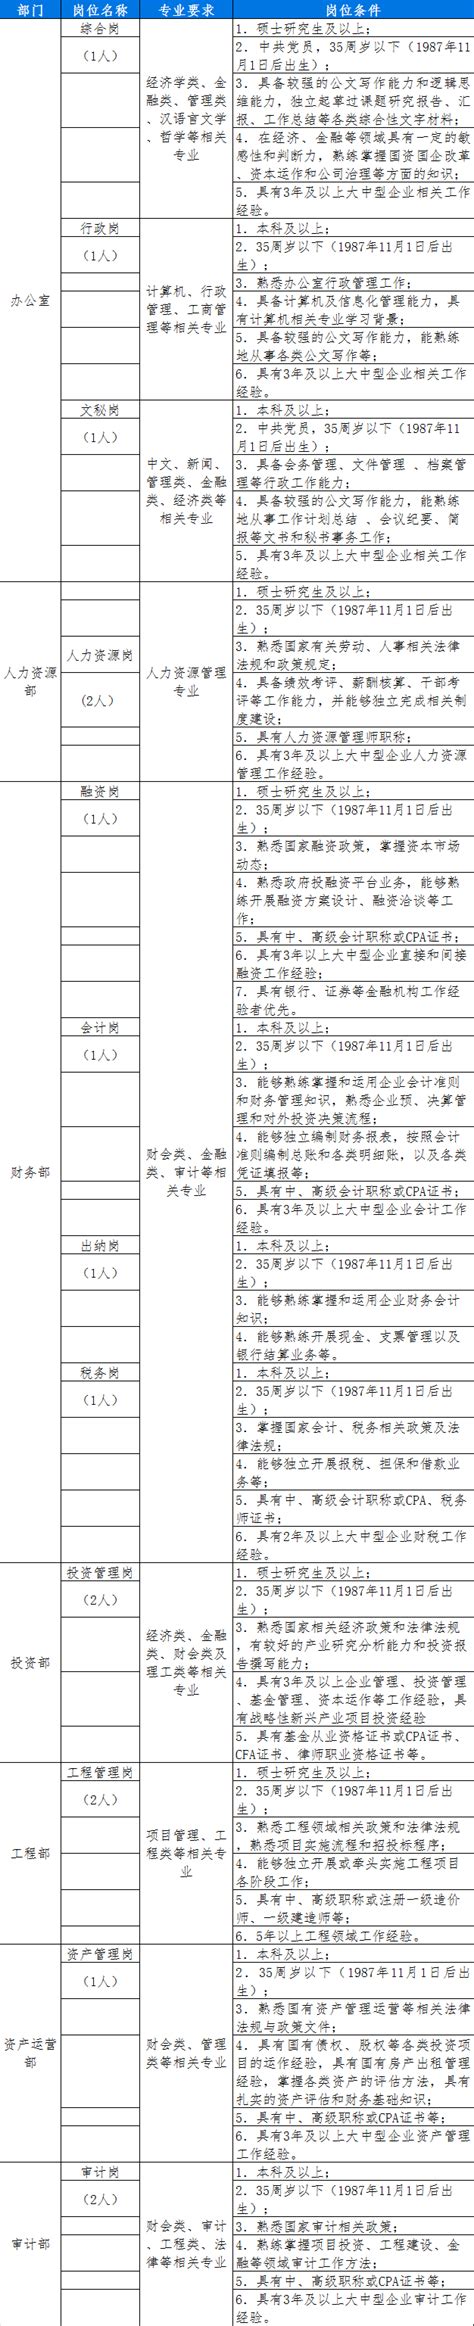 蚌埠市2021年度事业单位公开招聘工作人员拟聘用人员公示（第一批）_中共蚌埠市委党校